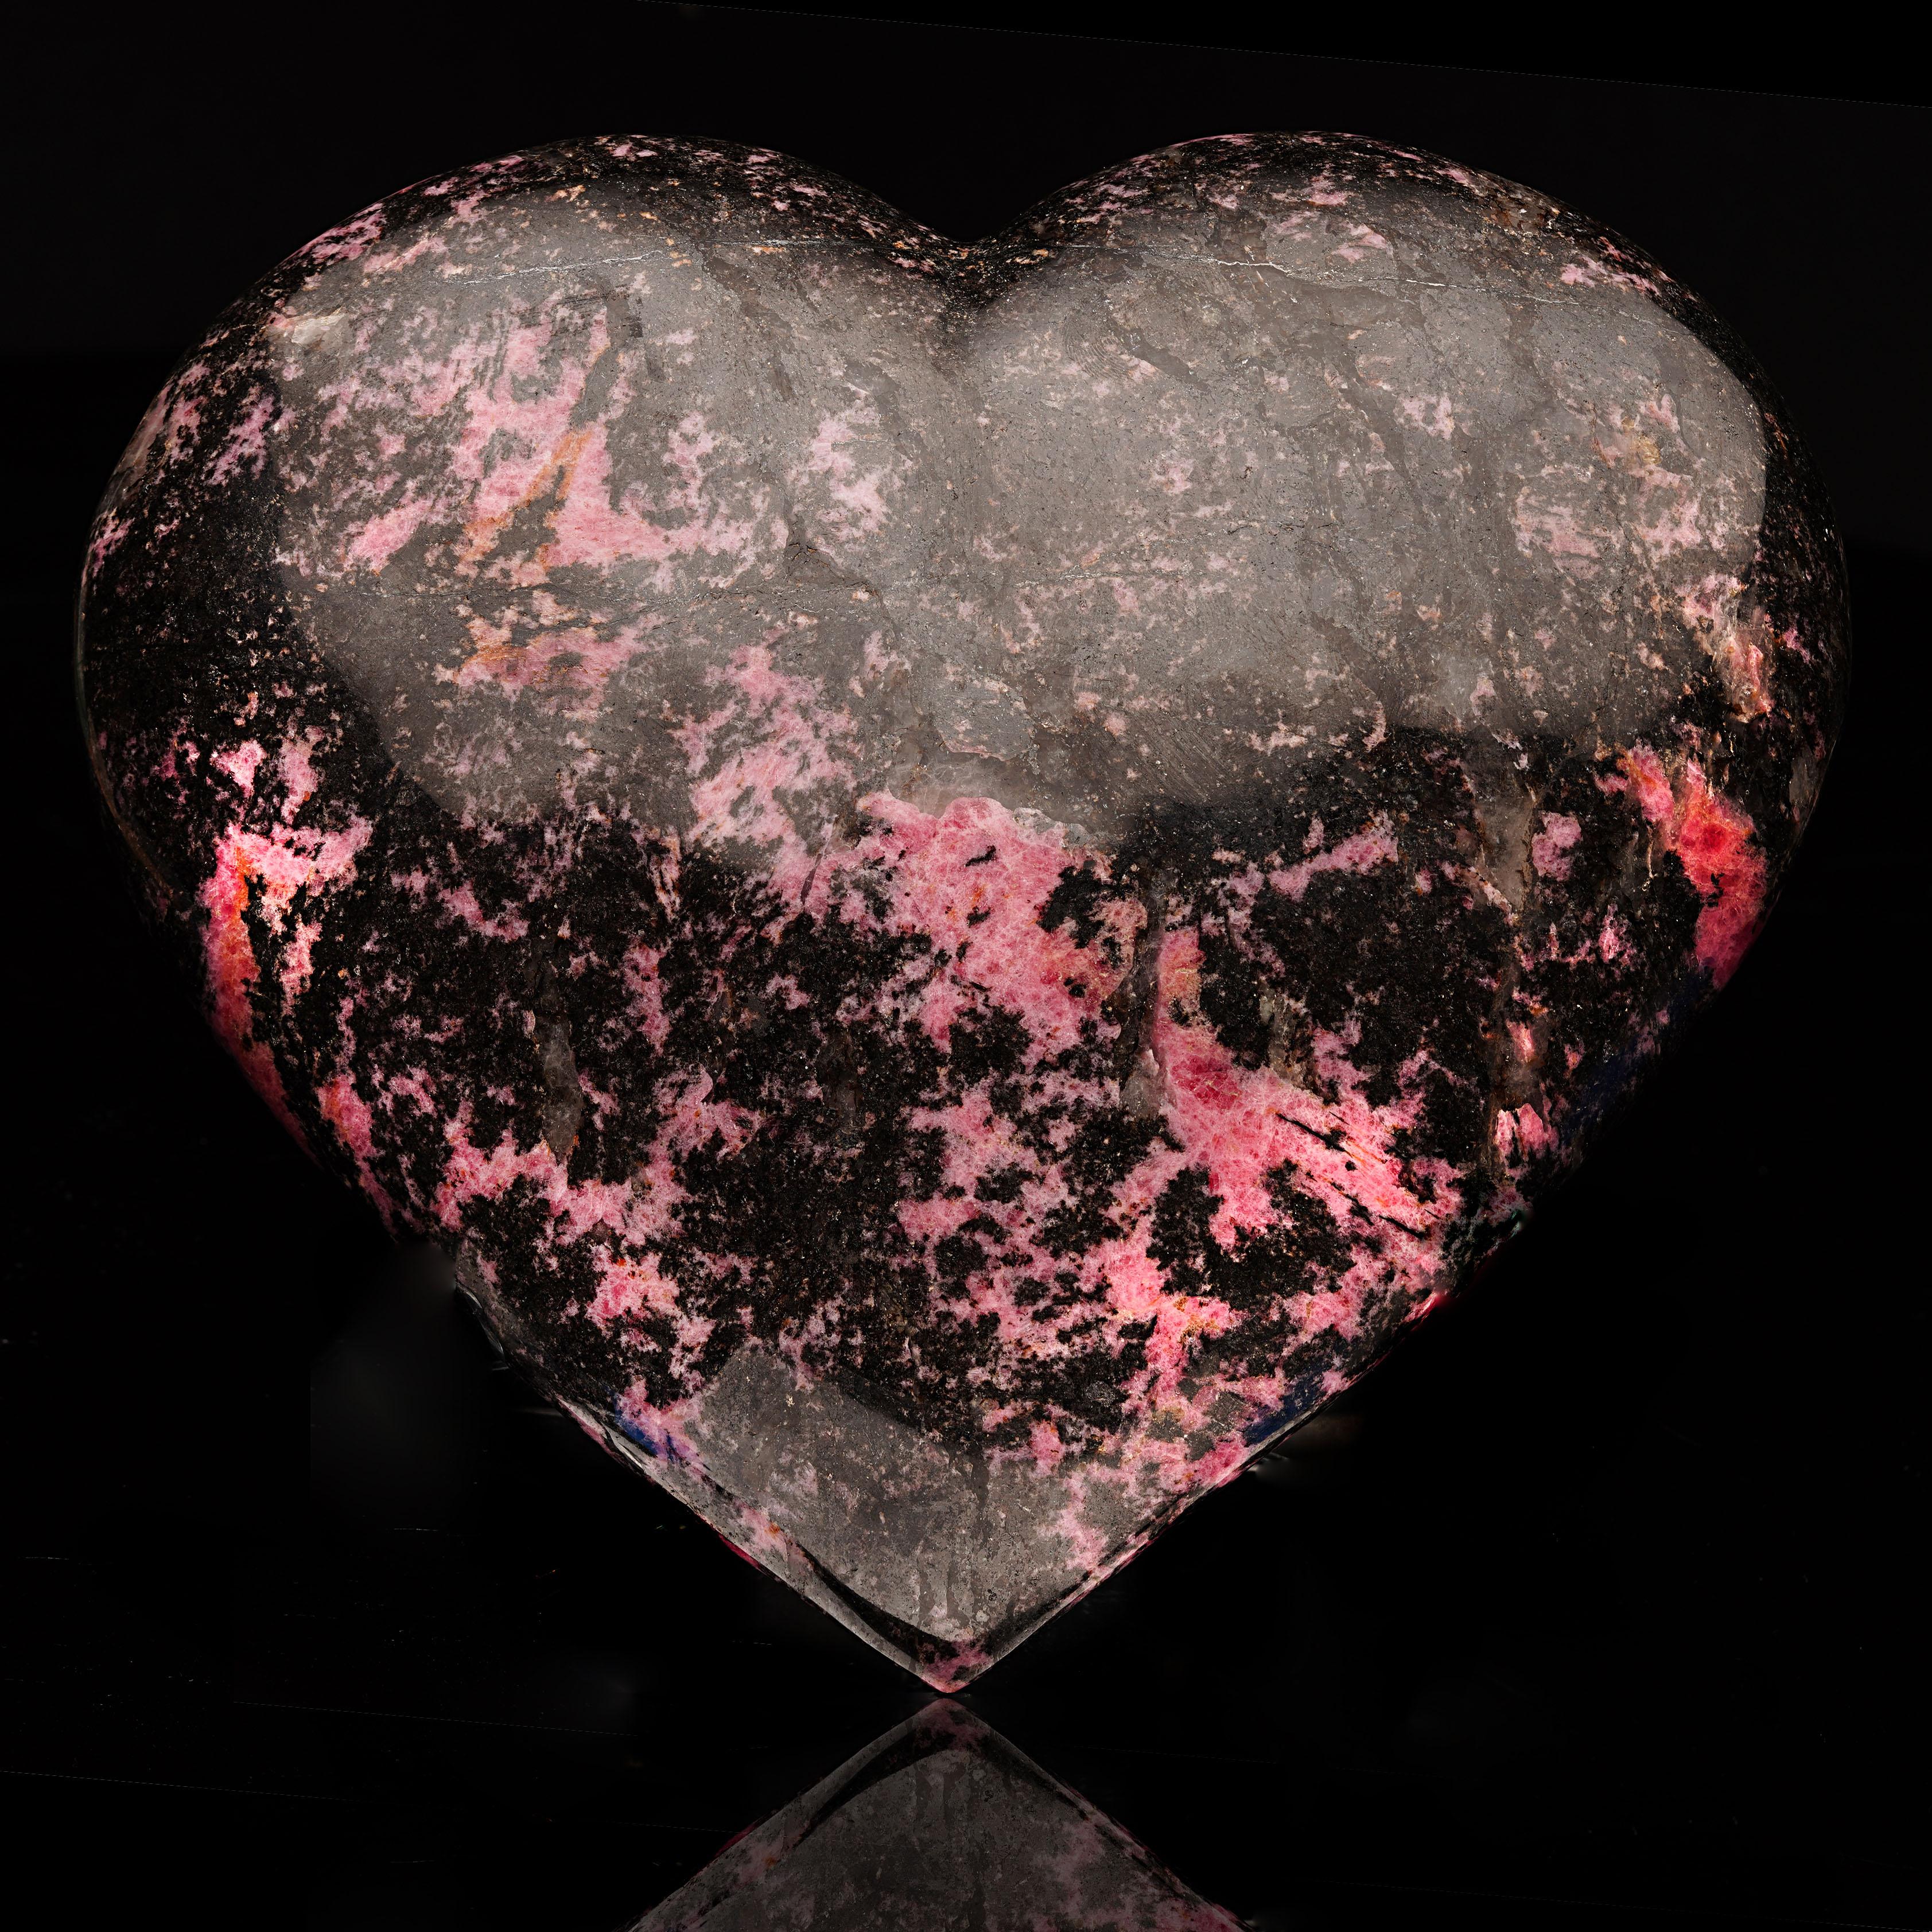 Dieses riesige rosa-schwarz marmorierte Herz wurde aus hochwertigem brasilianischem Rhodonit handgeschnitzt und handpoliert. Eine auffällige Ergänzung für jedes Haus oder ein wirkungsvolles Geschenk für einen lieben Menschen.

Abmessungen: 9 